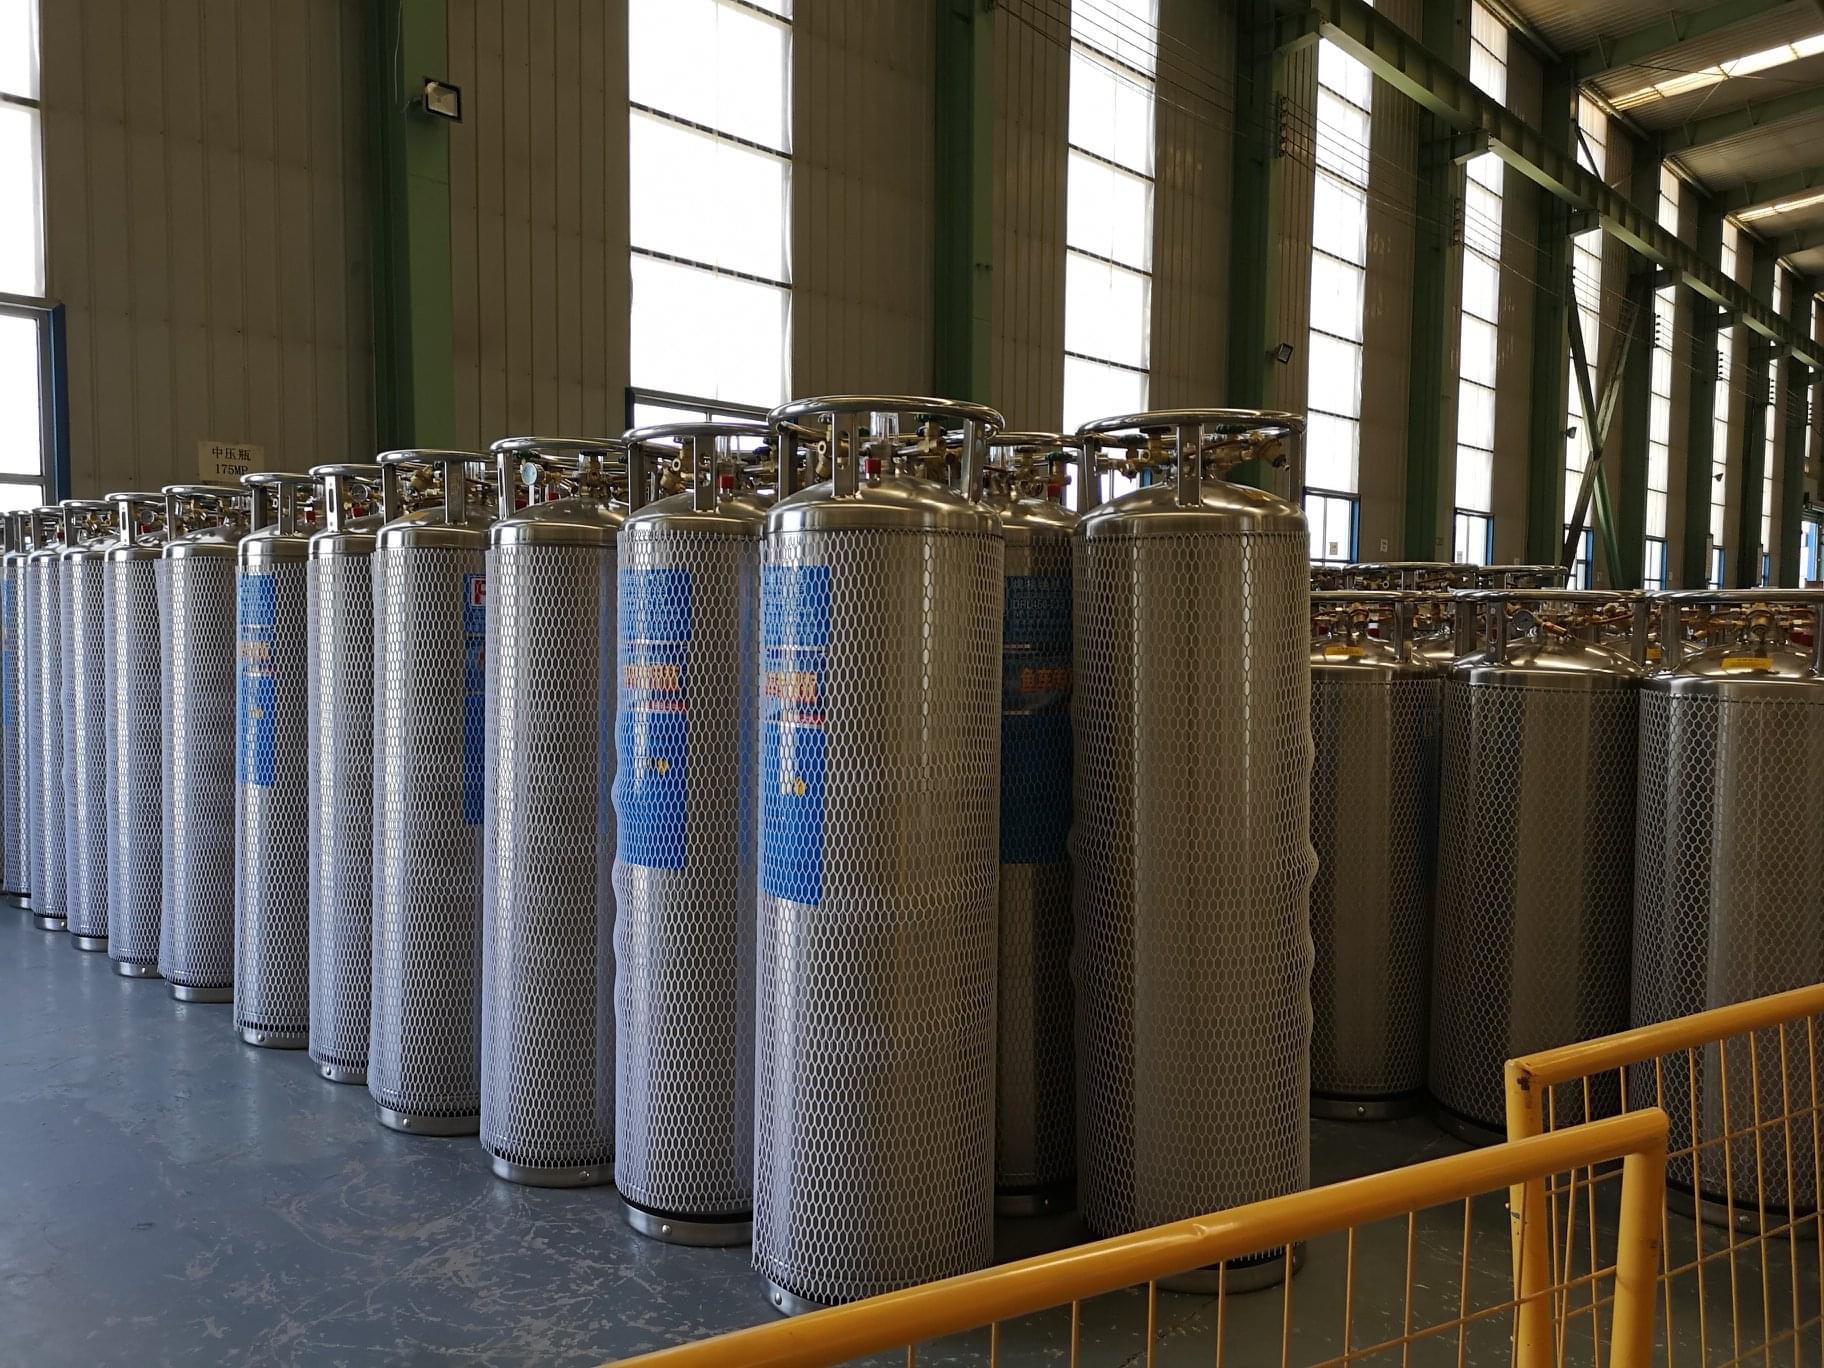 Bình khí oxy y tế phải được sản xuất theo tiêu chuẩn nghiêm ngặt, đảm bảo chất lượng